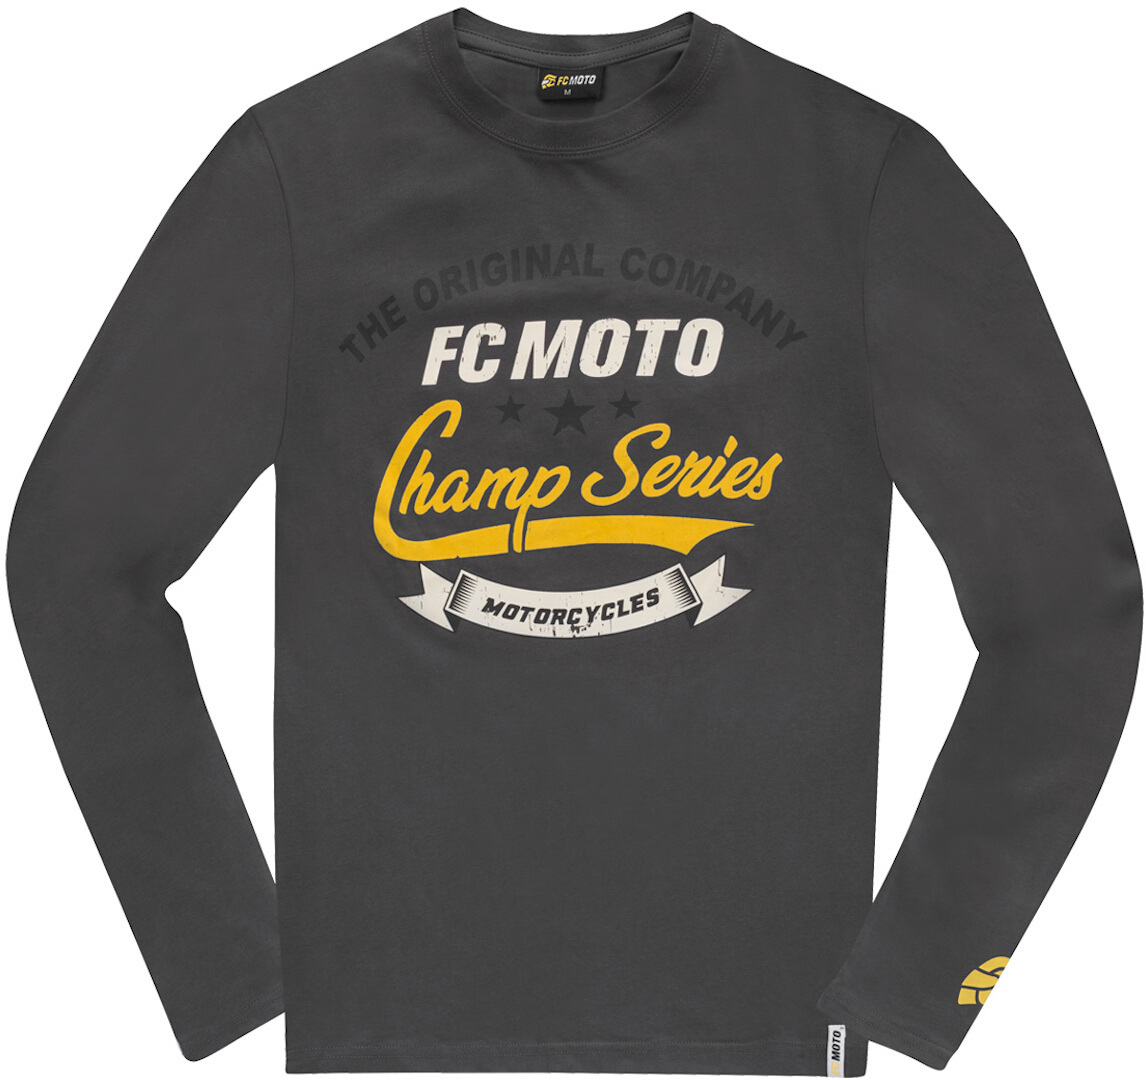 Рубашка FC-Moto Champ Series с длинными рукавами, темно-синий рубашка с длинными рукавами из вельвета 3 года 94 см синий